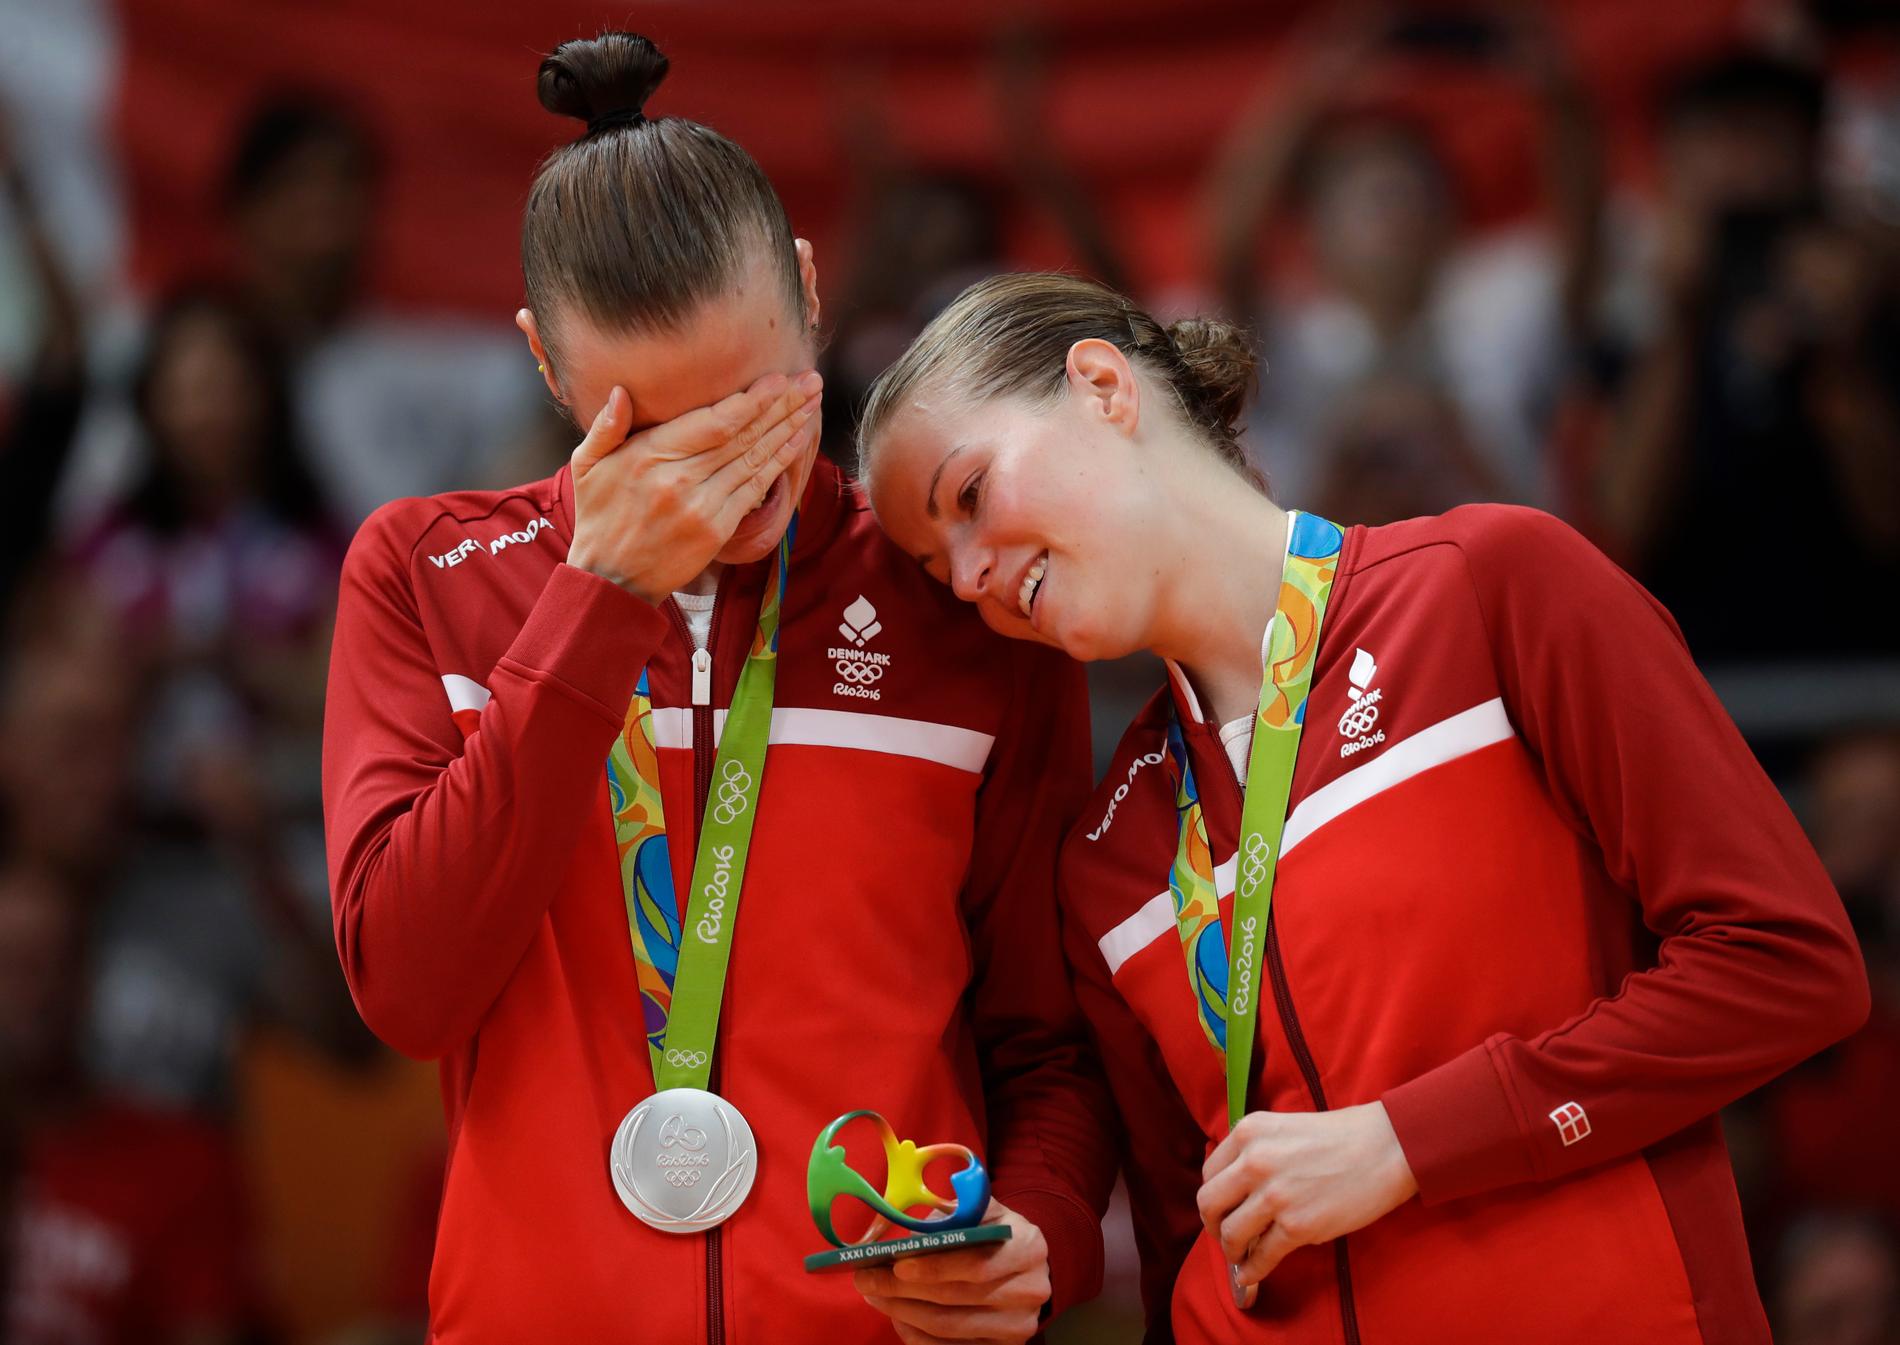 Rytter (vänster) och Pedersen tog OS-silver i dubbel i Rio 2016.